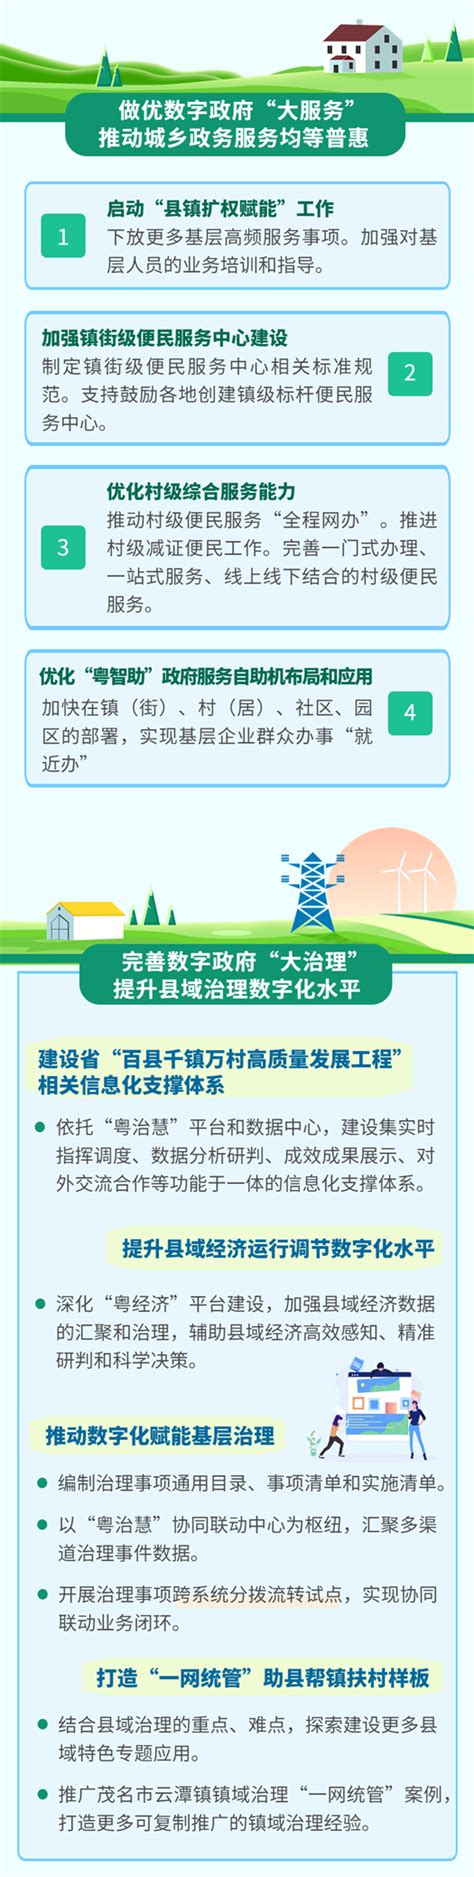 湛江市建设工程造价信息化管理系统